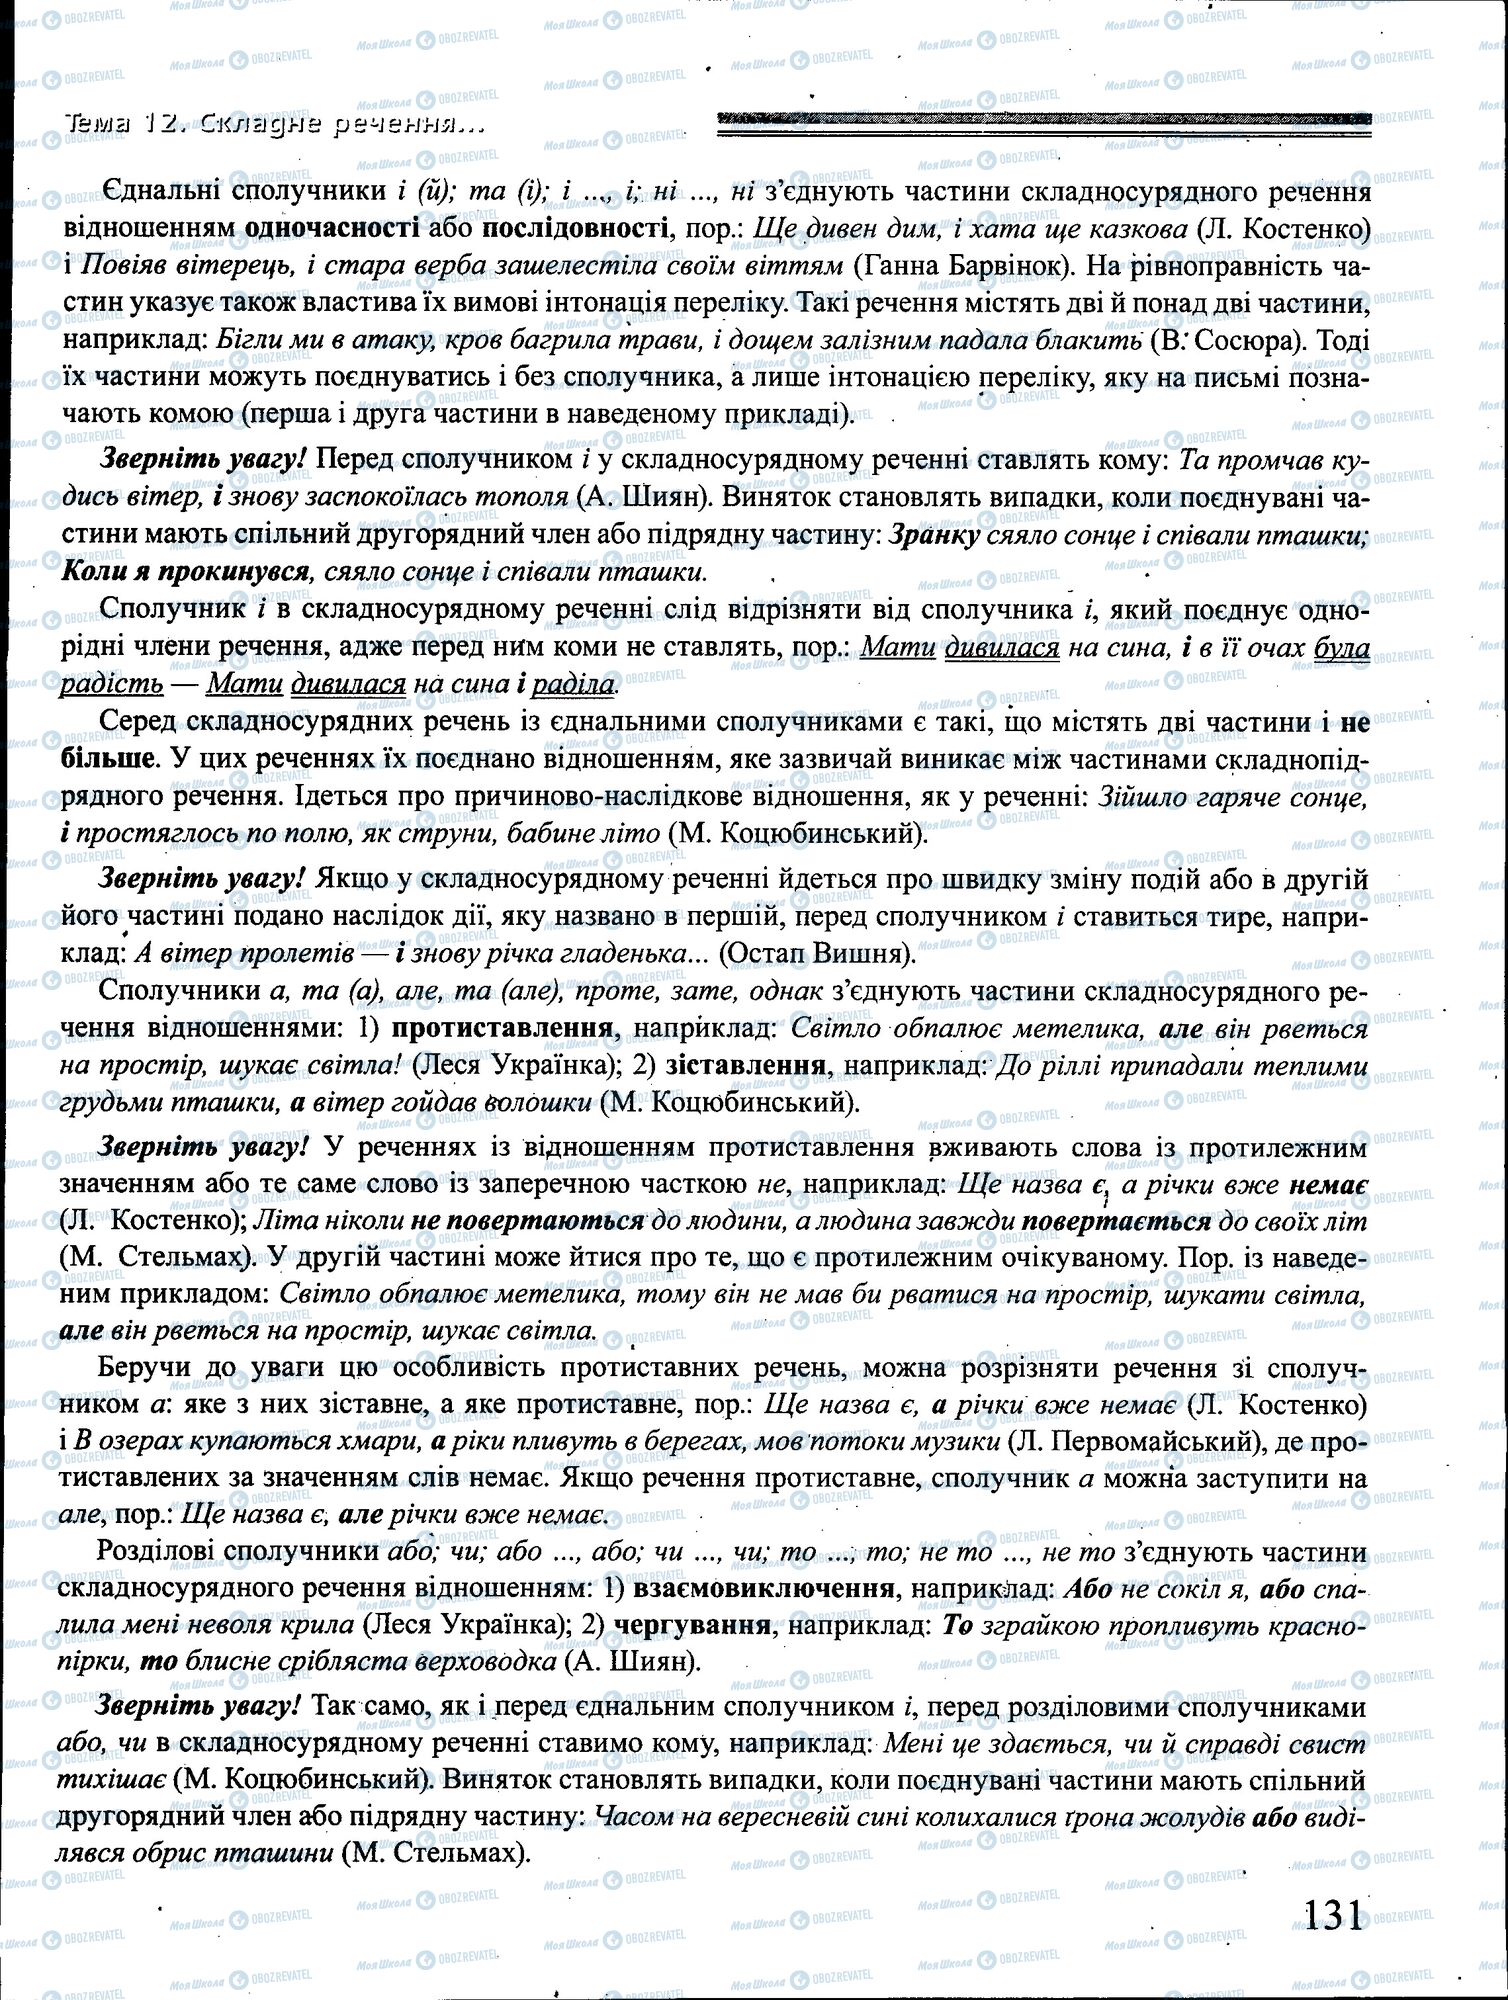 ДПА Укр мова 4 класс страница 131